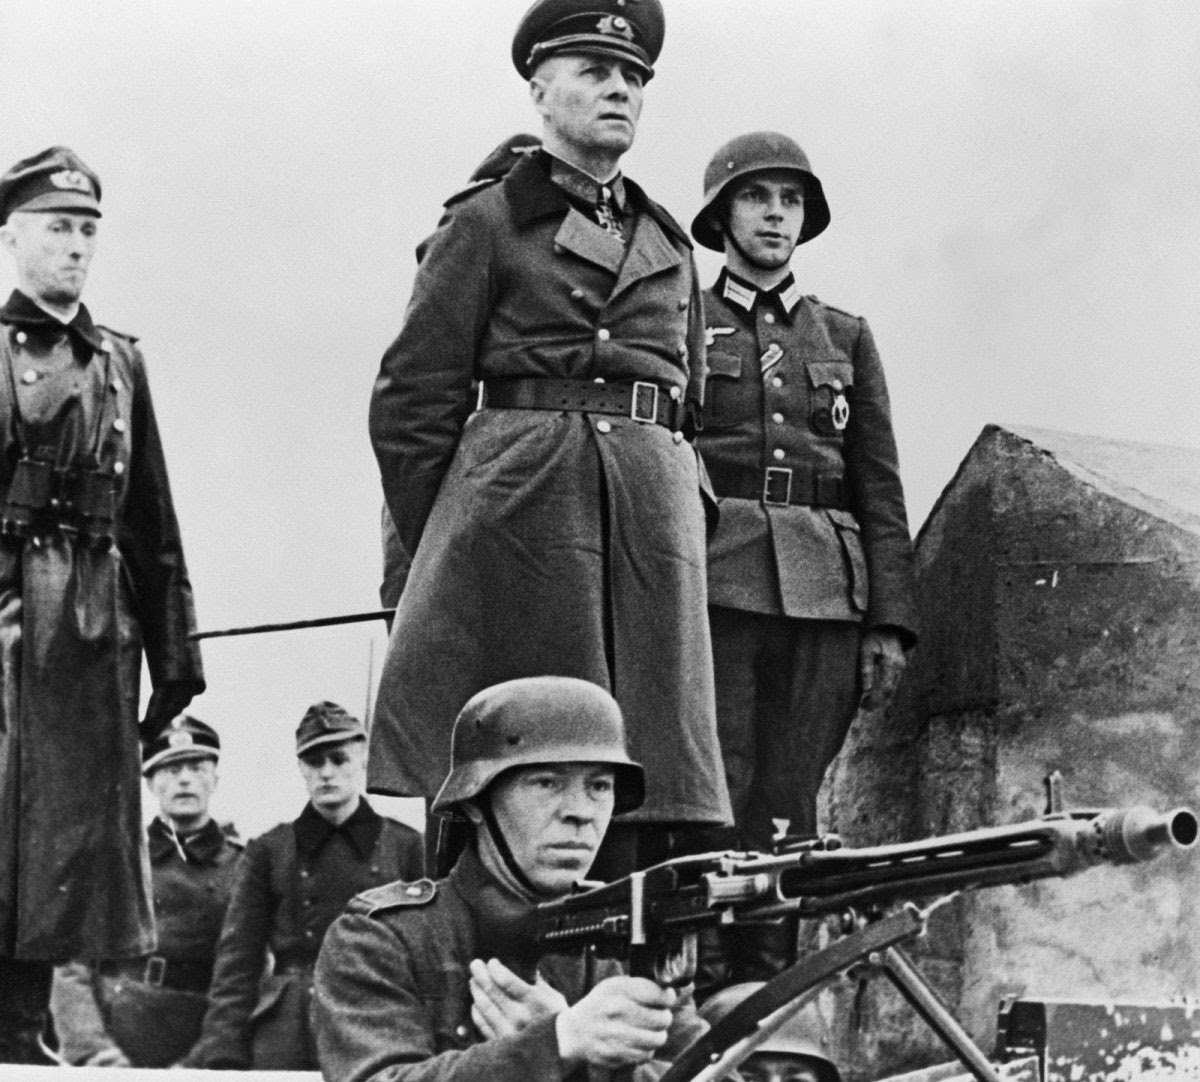 http://3.bp.blogspot.com/-dF2eTrxa1EY/U5kGg5CPYVI/AAAAAAAAJVI/TmQecc5Xed4/s1600/Erwin+Rommel+inspecting+the+defenses+in+Normandy,+1944.jpg